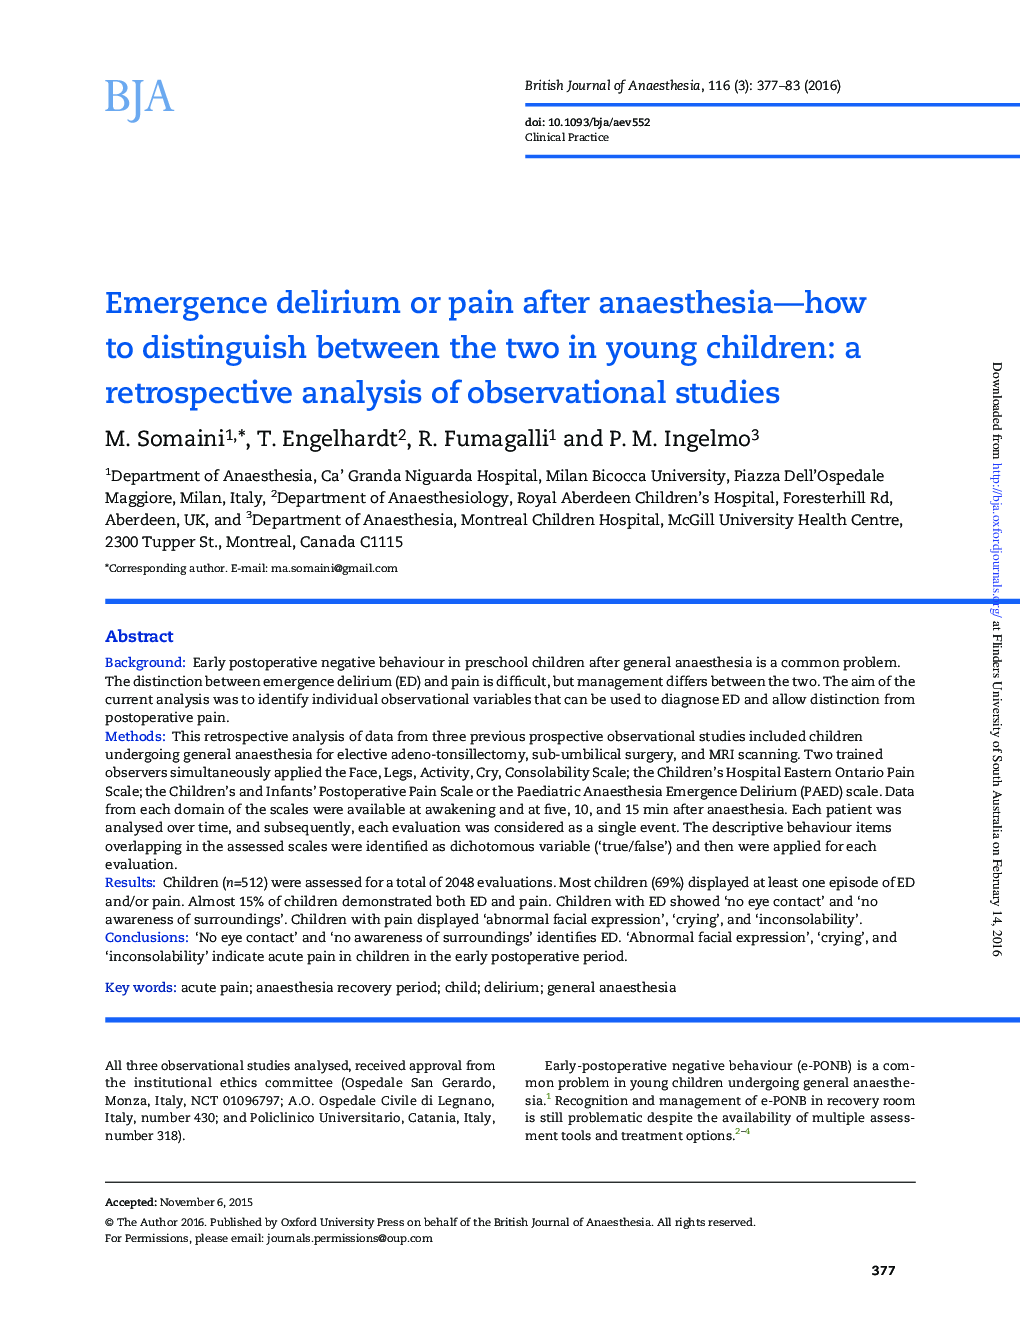 دلیری ناگهانی یا درد بعد از بیهوشی - چگونه می توان بین دو کودک در کودکان جوانه زد: یک بررسی گذشته نگر از مطالعات مشاهده 